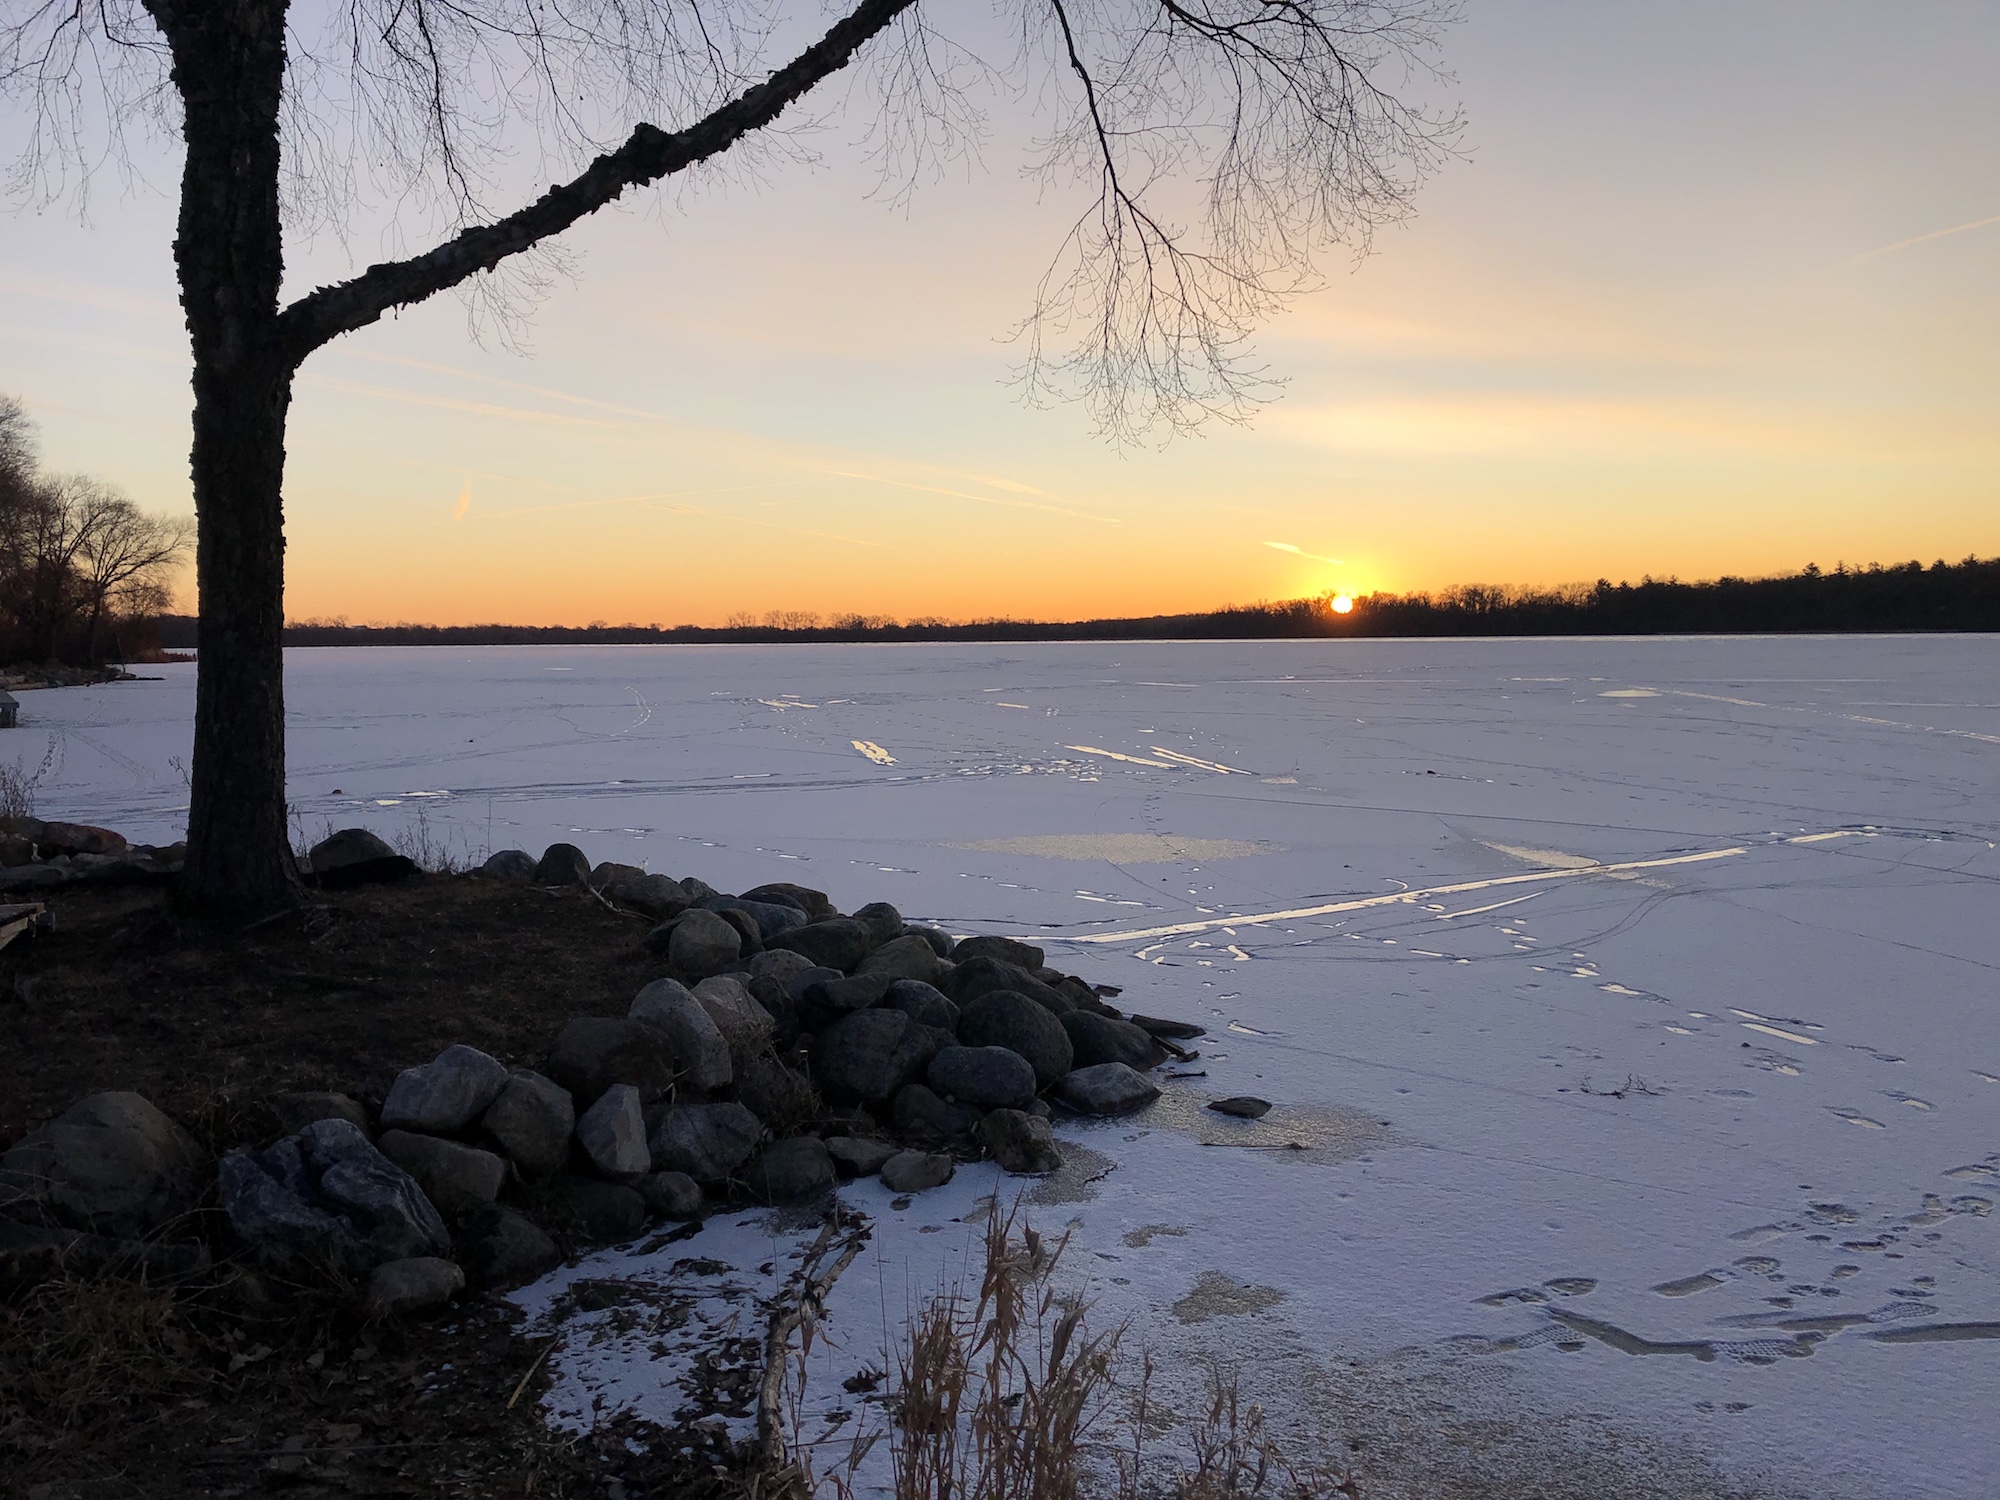 Lake Wingra on December 18, 2019.